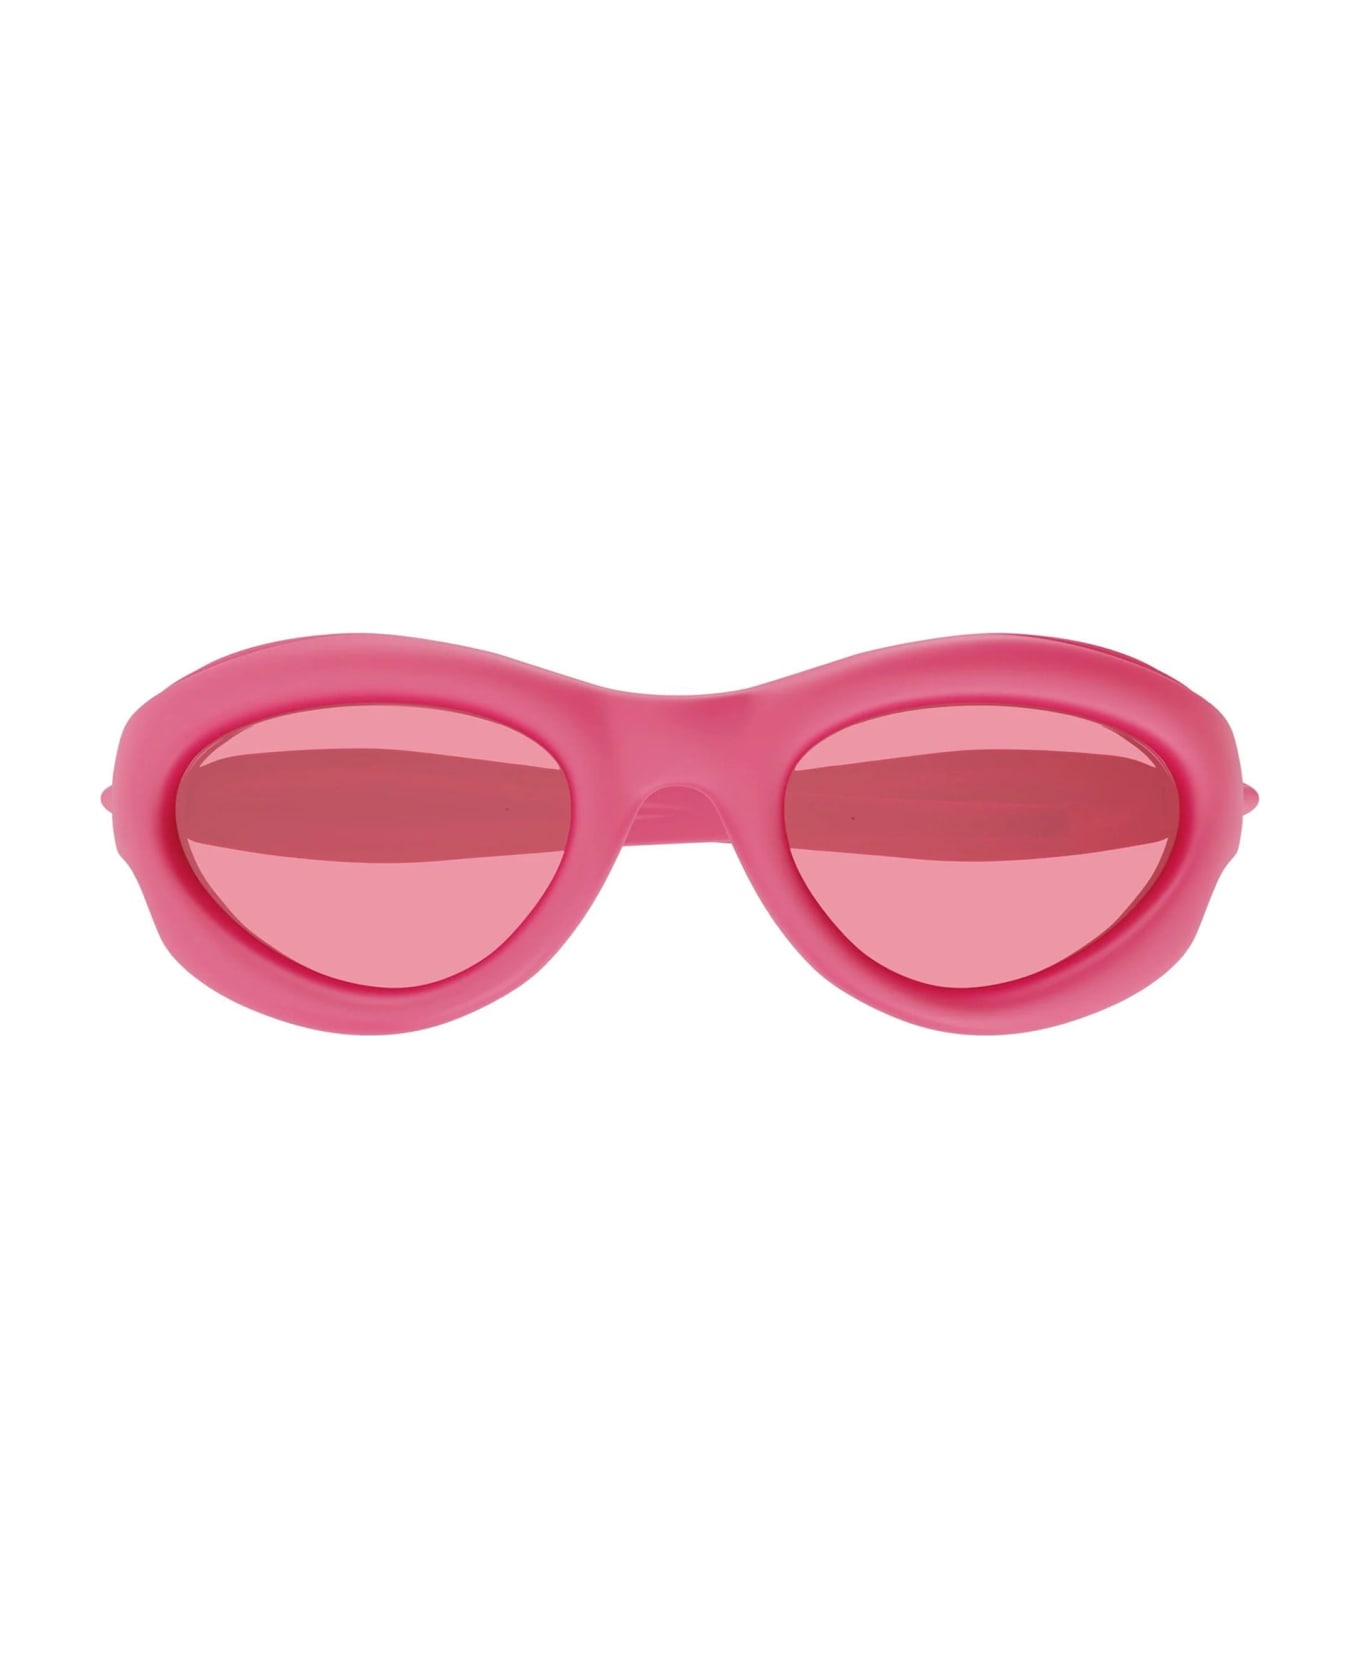 Bottega Veneta Eyewear Bv1162s-001 - Pink Sunglasses - pink